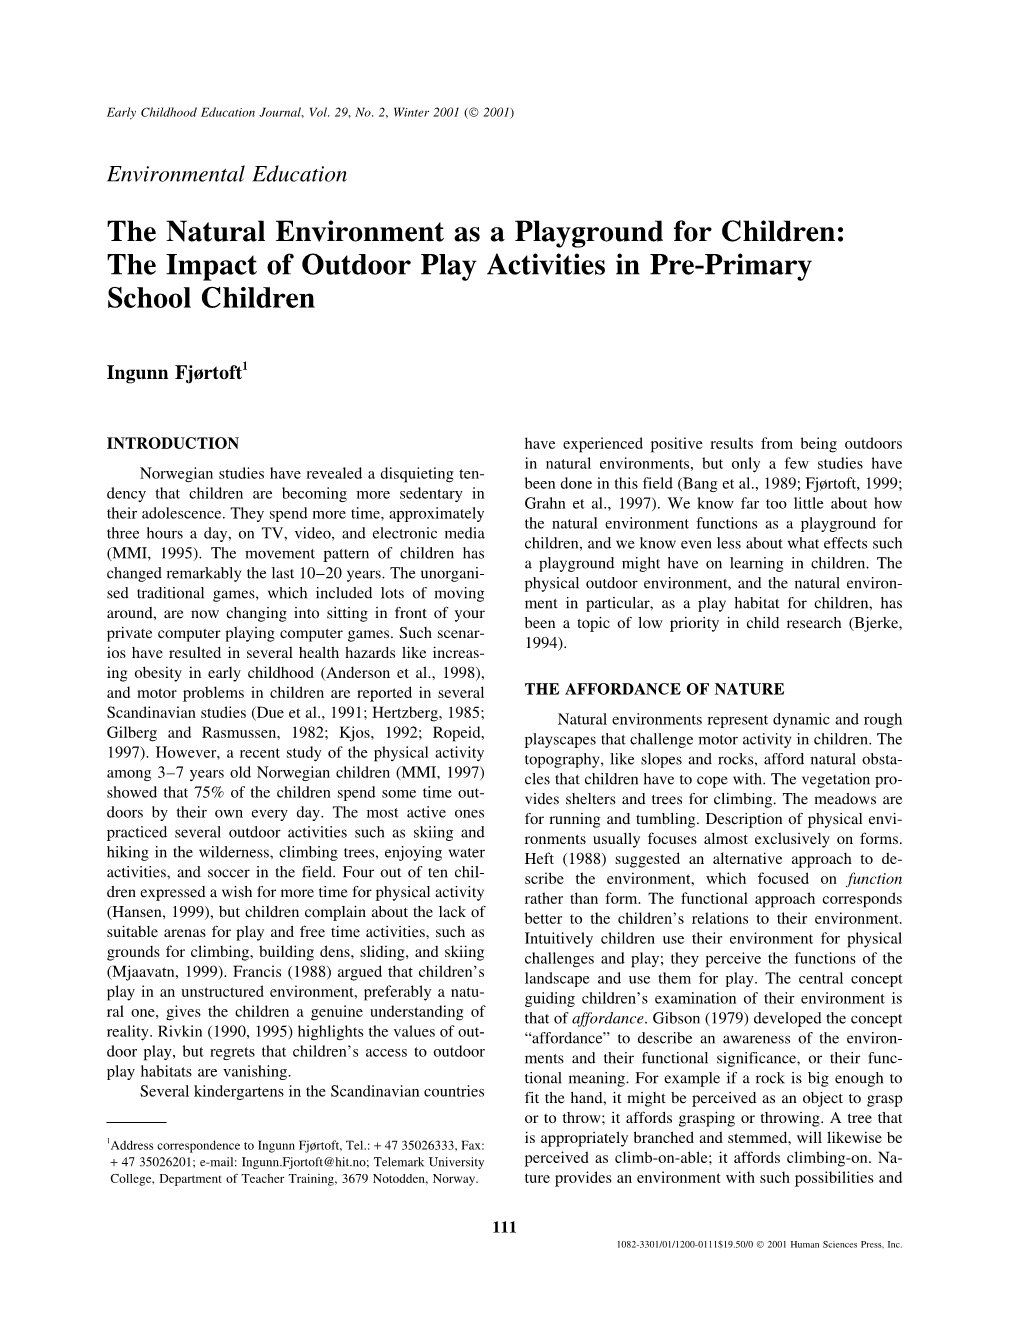 The Impact of Outdoor Play Activities in Pre-Primary School Children